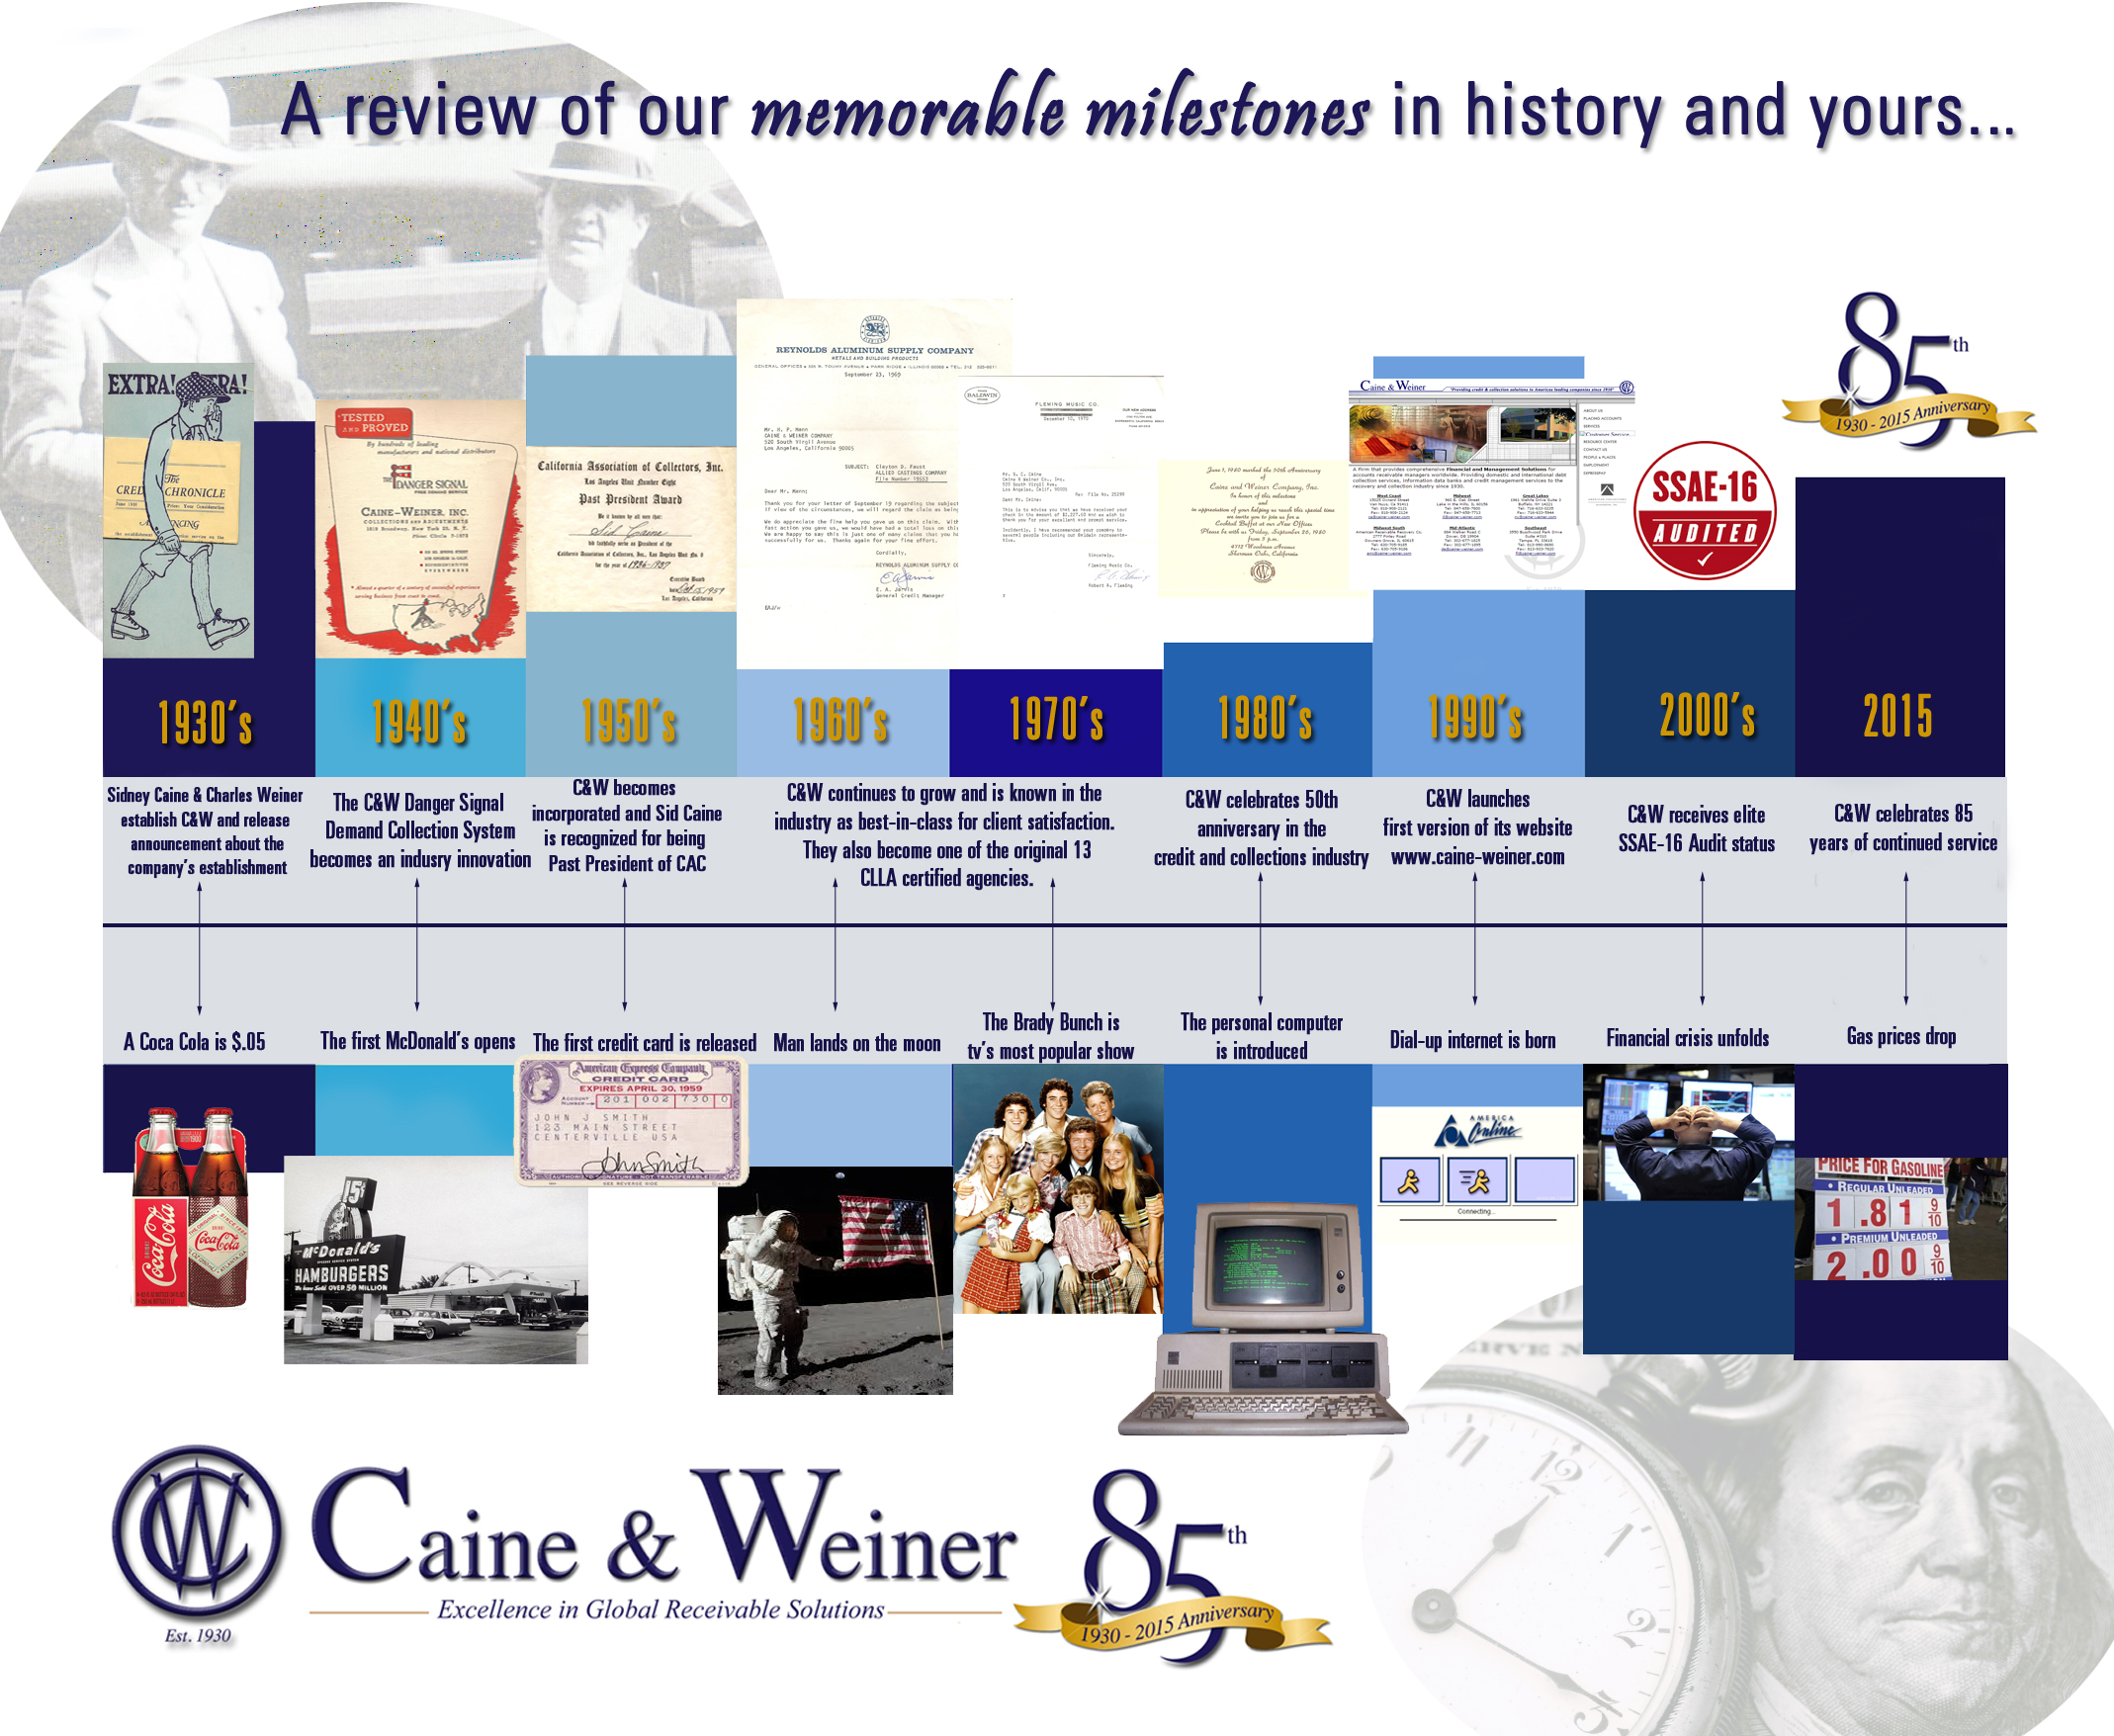 C&W History Timeline